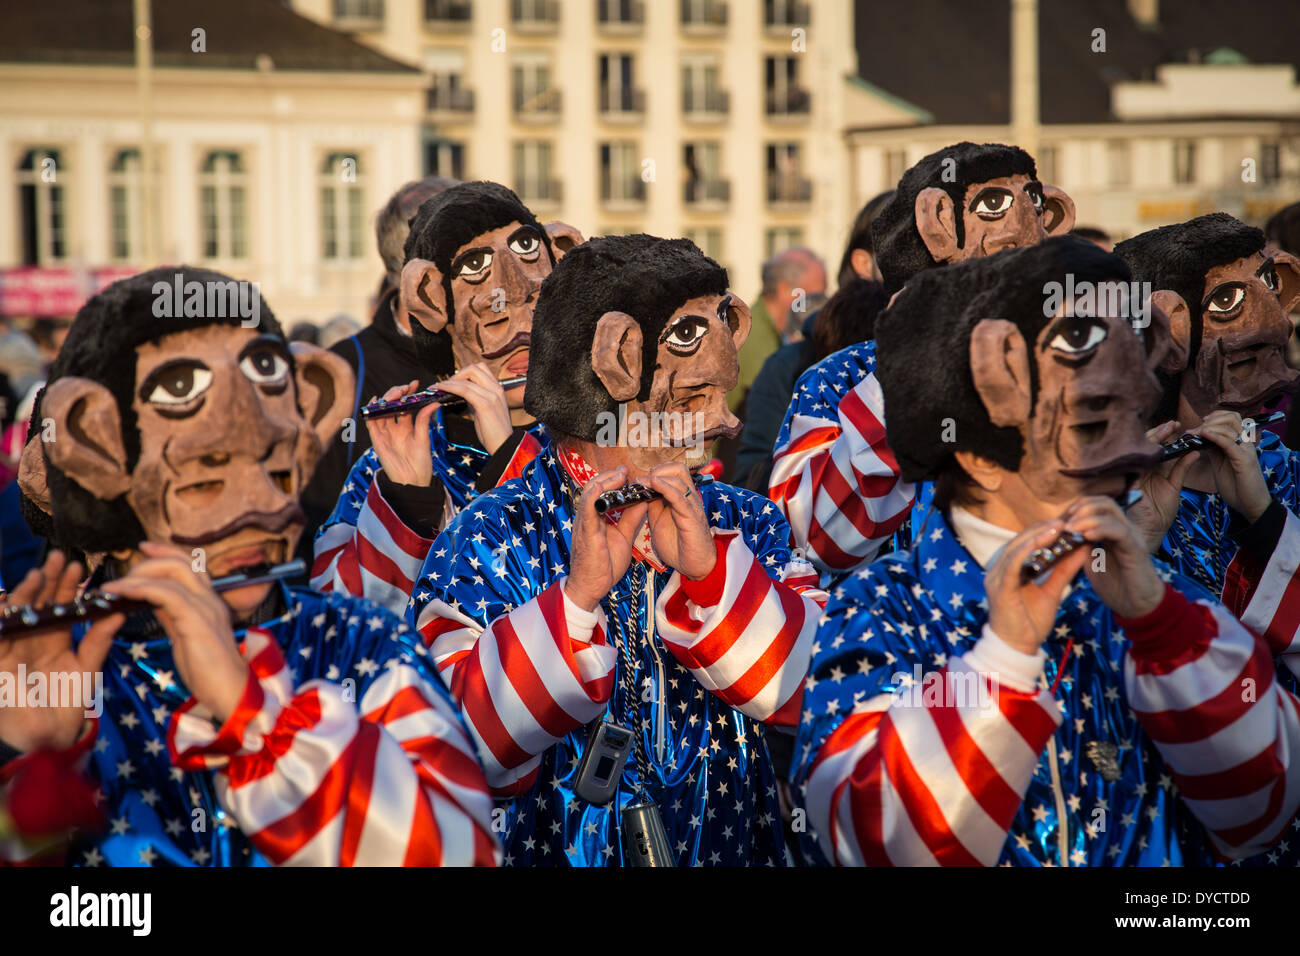 Groupe de soi-disant Waggis flûtes jouant au carnaval de Bâle en Suisse. Banque D'Images